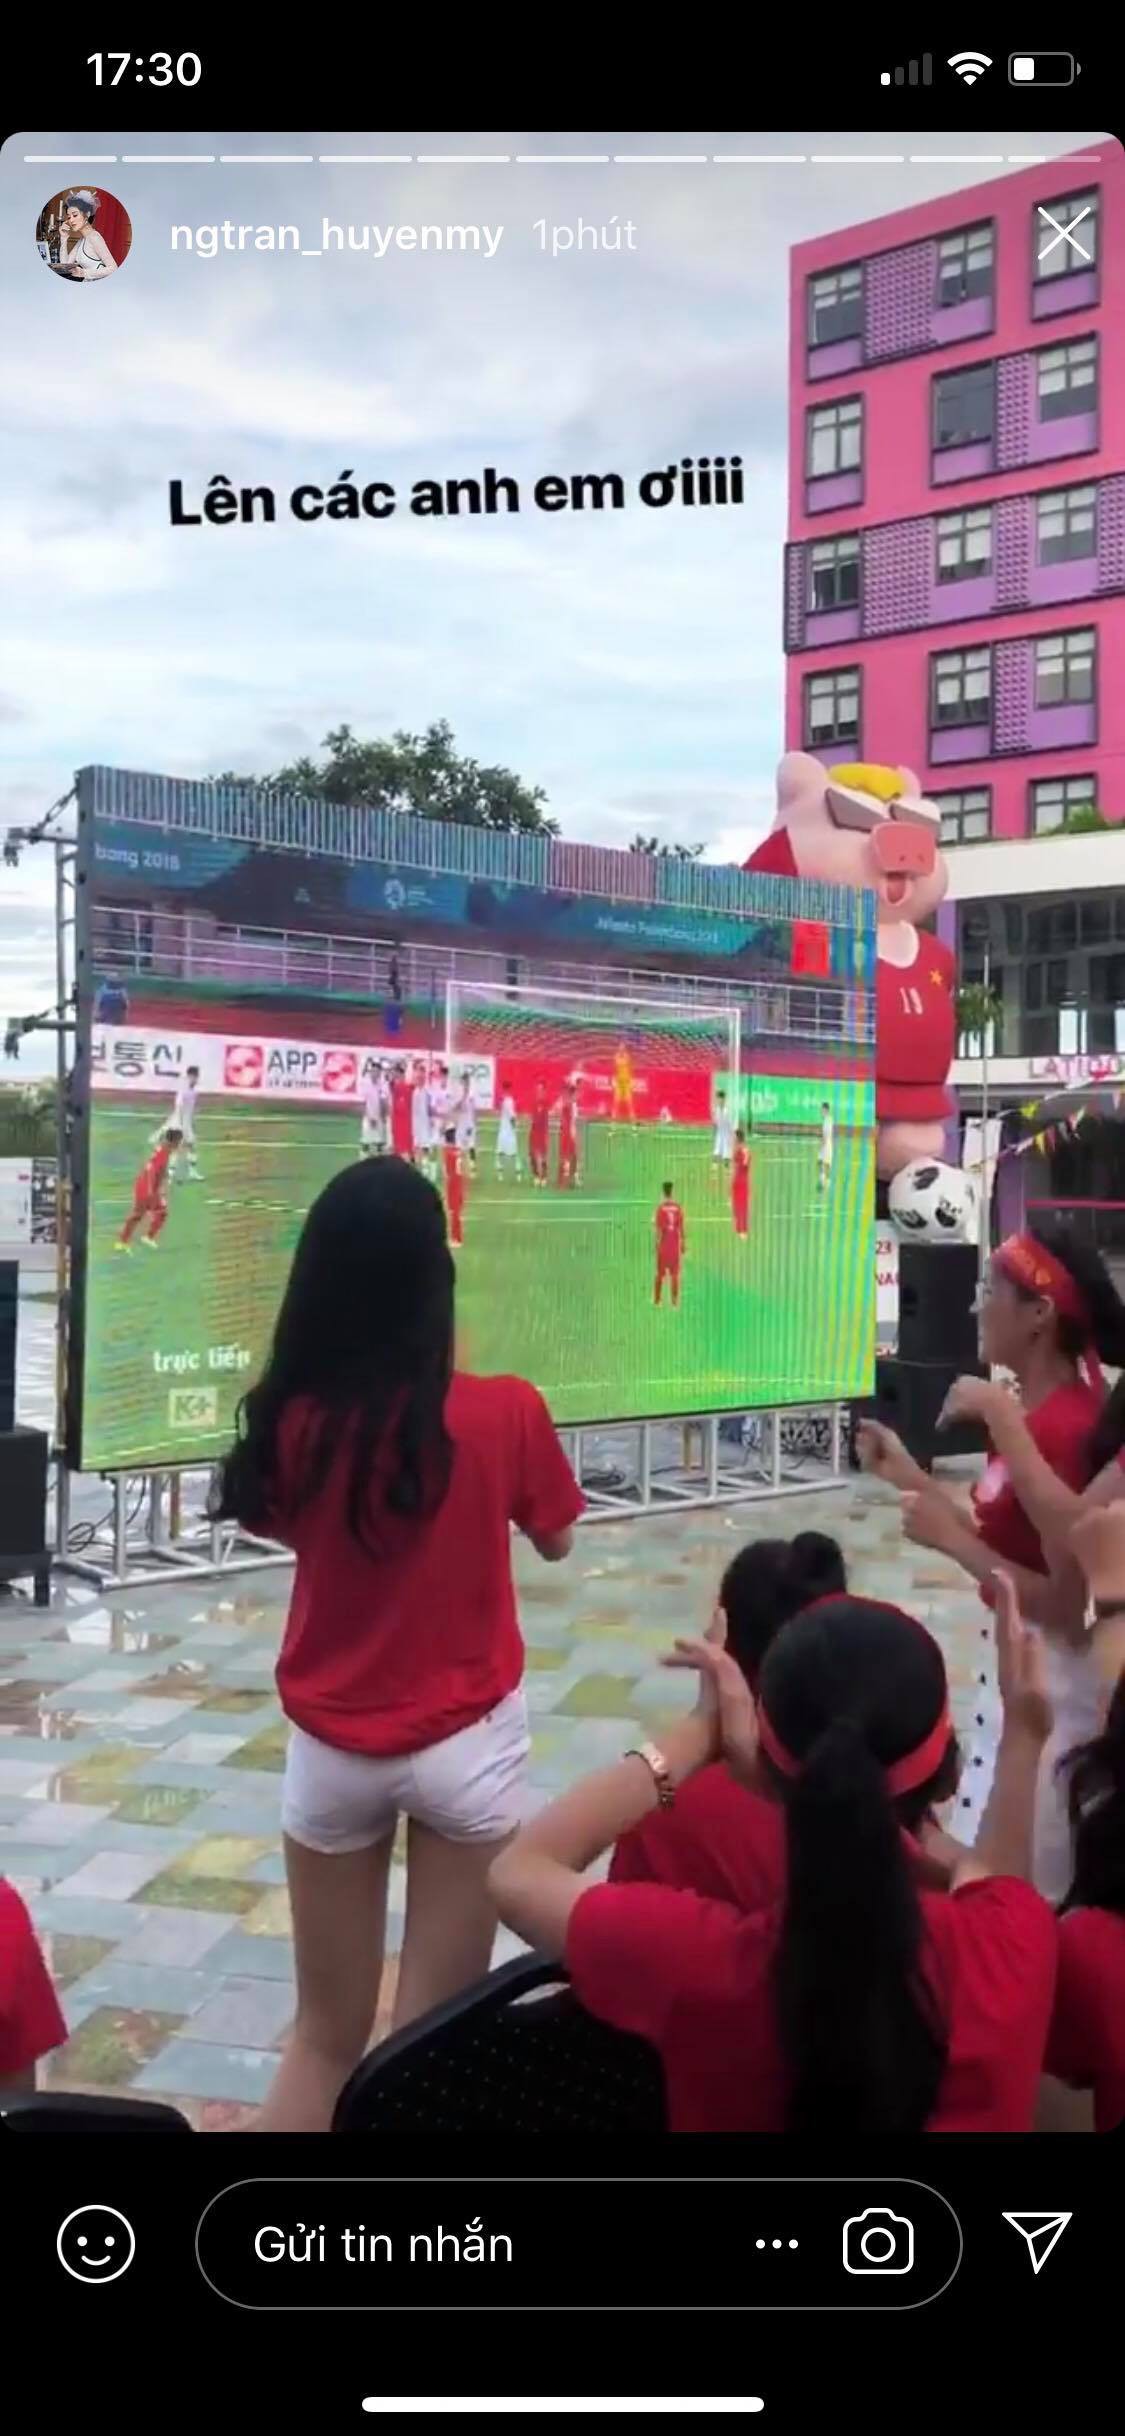 Thanh Tú bật khóc, Mỹ Linh và các thí sinh Hoa hậu Việt Nam 2018 vỡ oà trước cú ghi bàn tuyệt đẹp của Minh Vương - Ảnh 2.